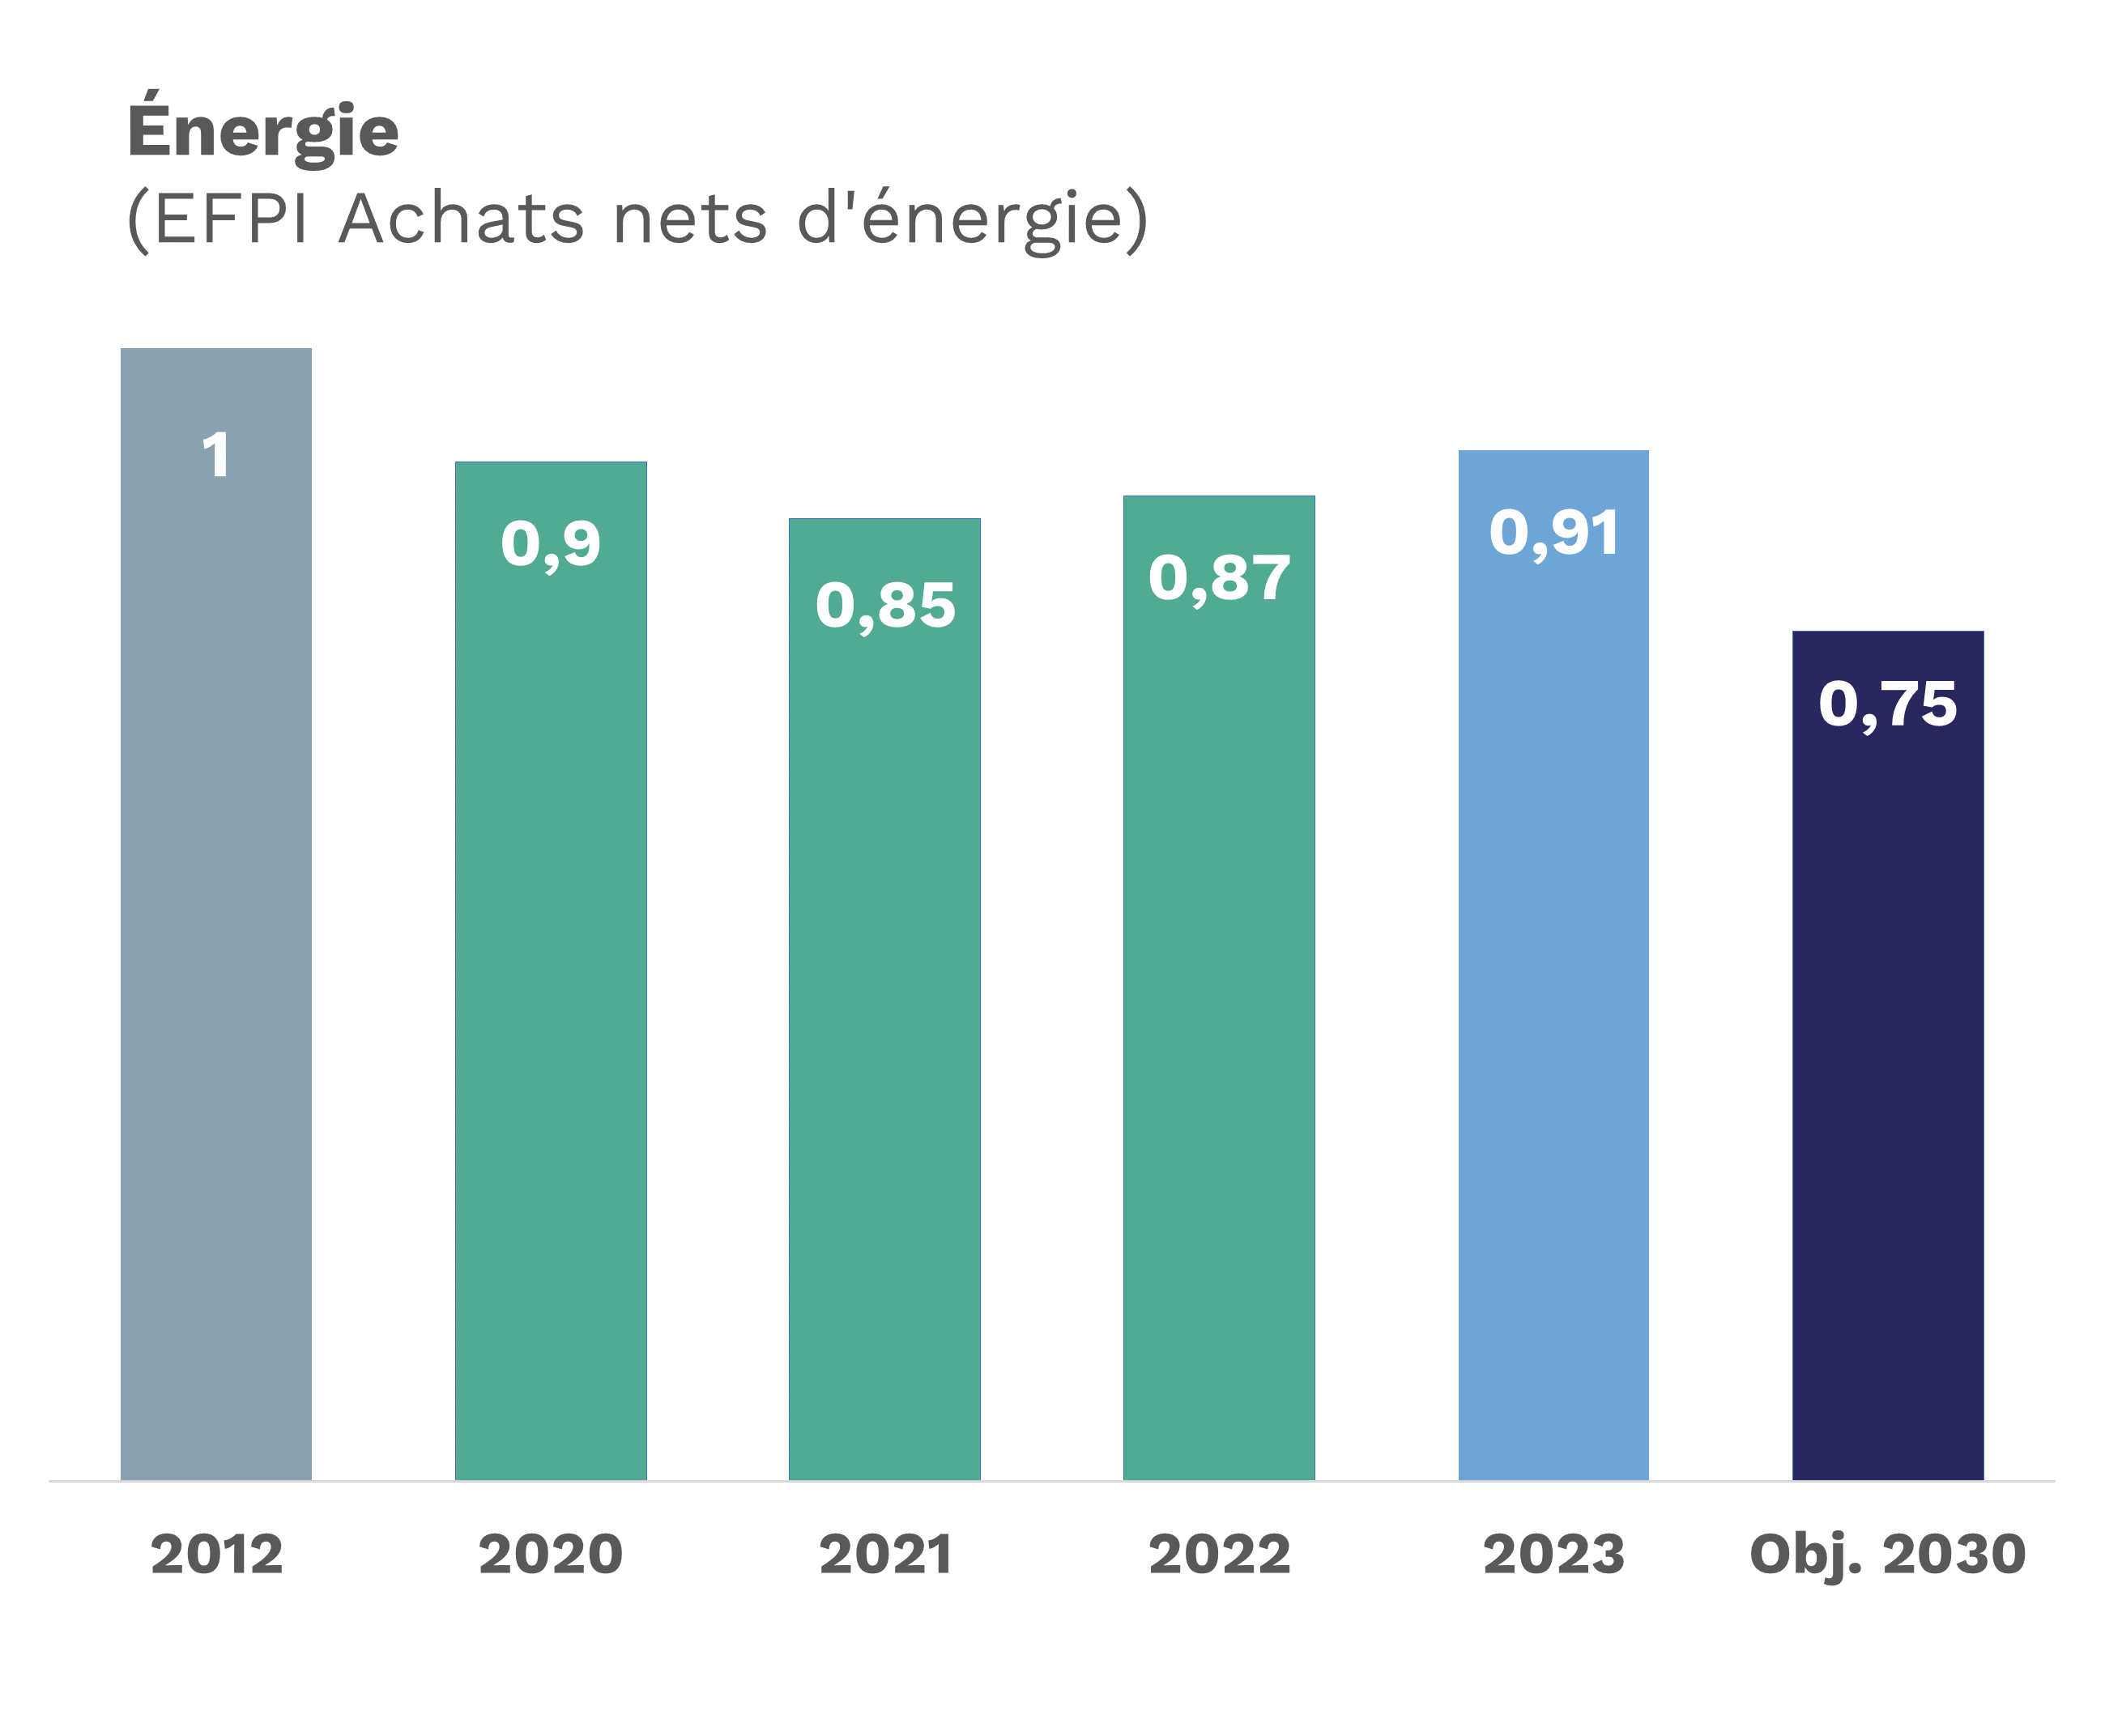 En 2012, l'EFPI d'achat net en énergie était de 1 ; 0,90 en 2020 ; 0,85 en 2021 ; 0,87 en 2022 ; 0,91 en 2023, et un objectif de 0,75 en 2030